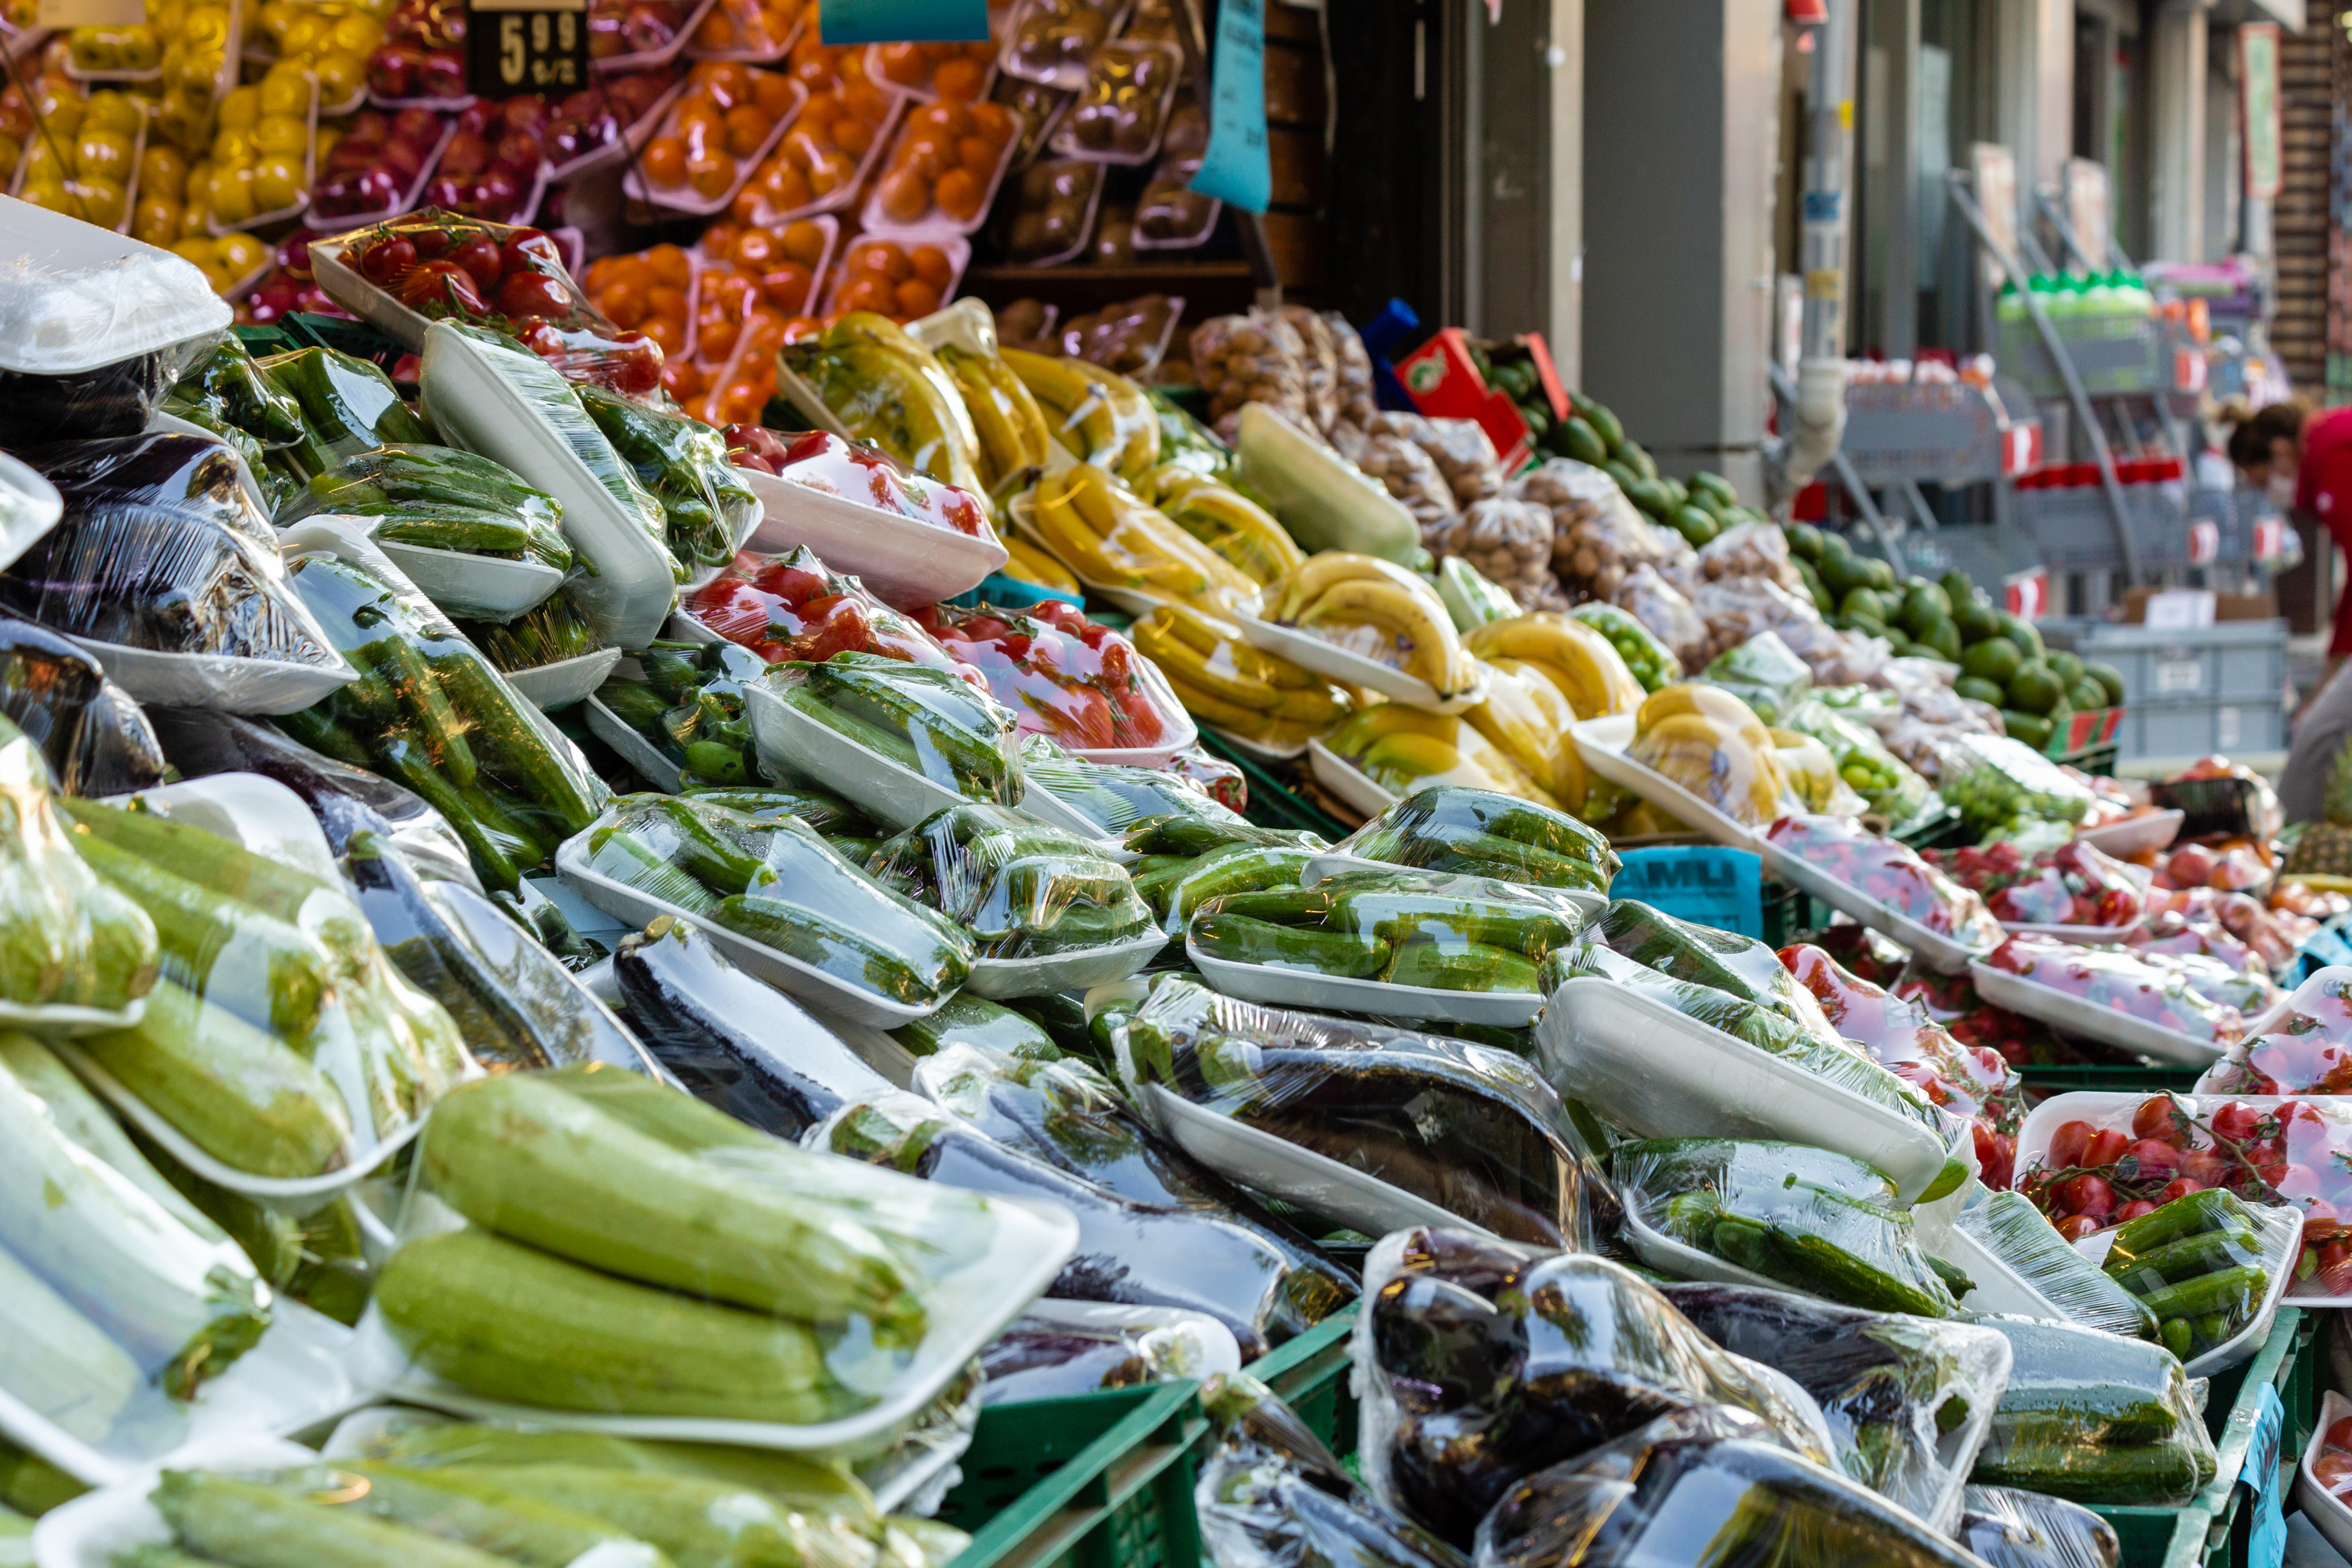 La UE prohibirá el plástico de un solo uso para frutas y verduras frescas, envases de cafeterías y porciones individuales de salsas